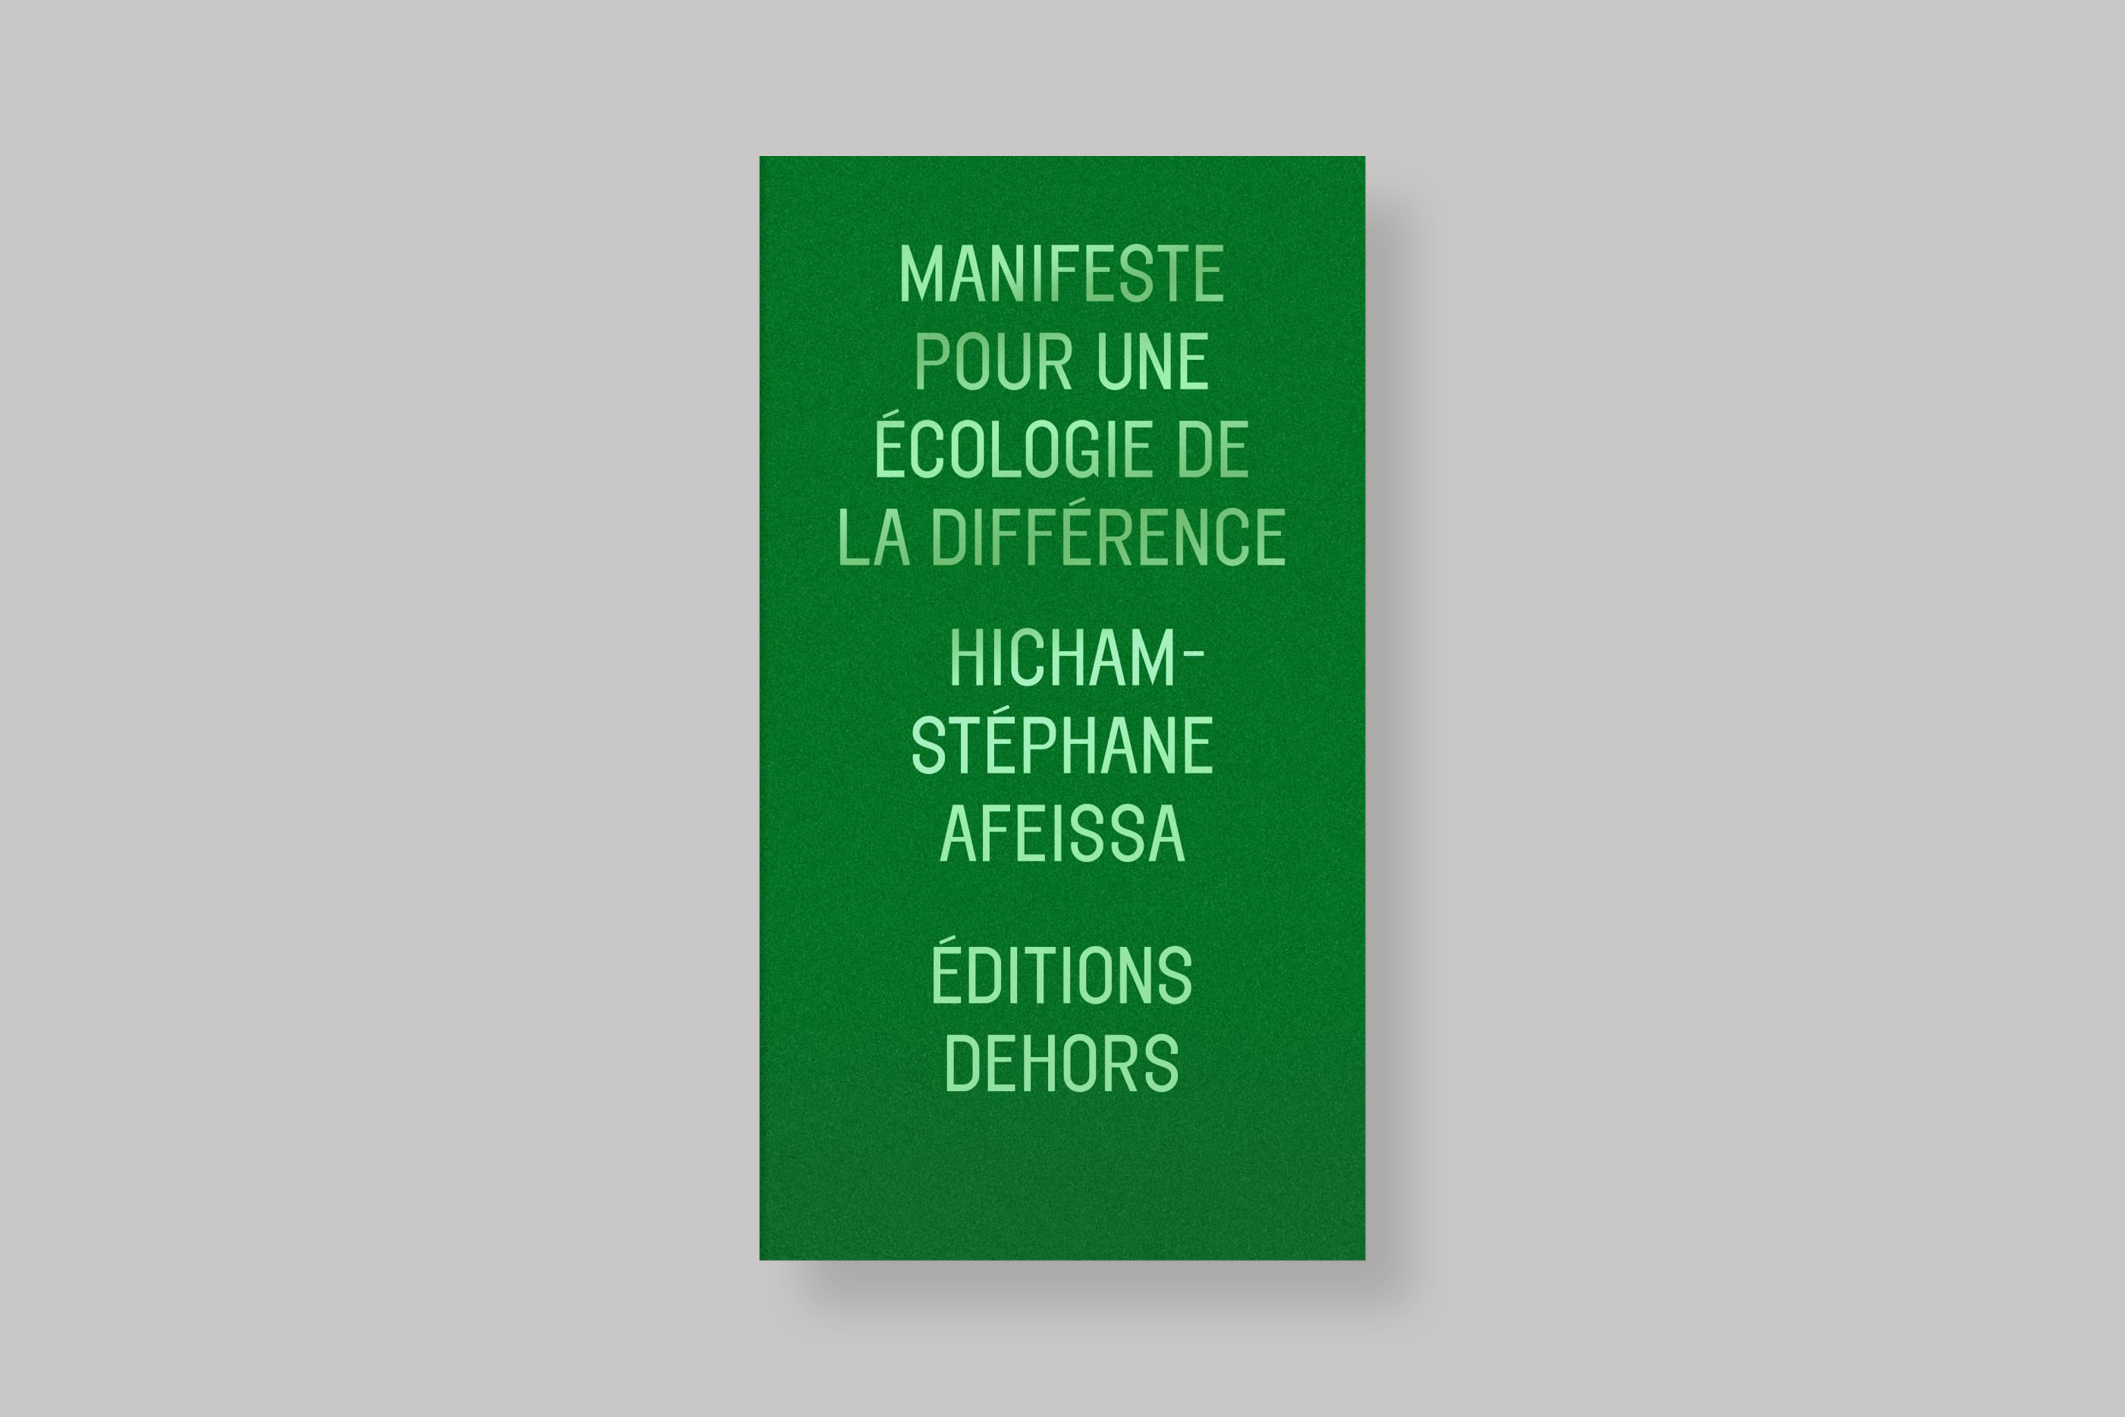 Manifeste-pour-une-ecologie-de-la-difference-hicham-stephane-afeissa-editions-dehors-cover